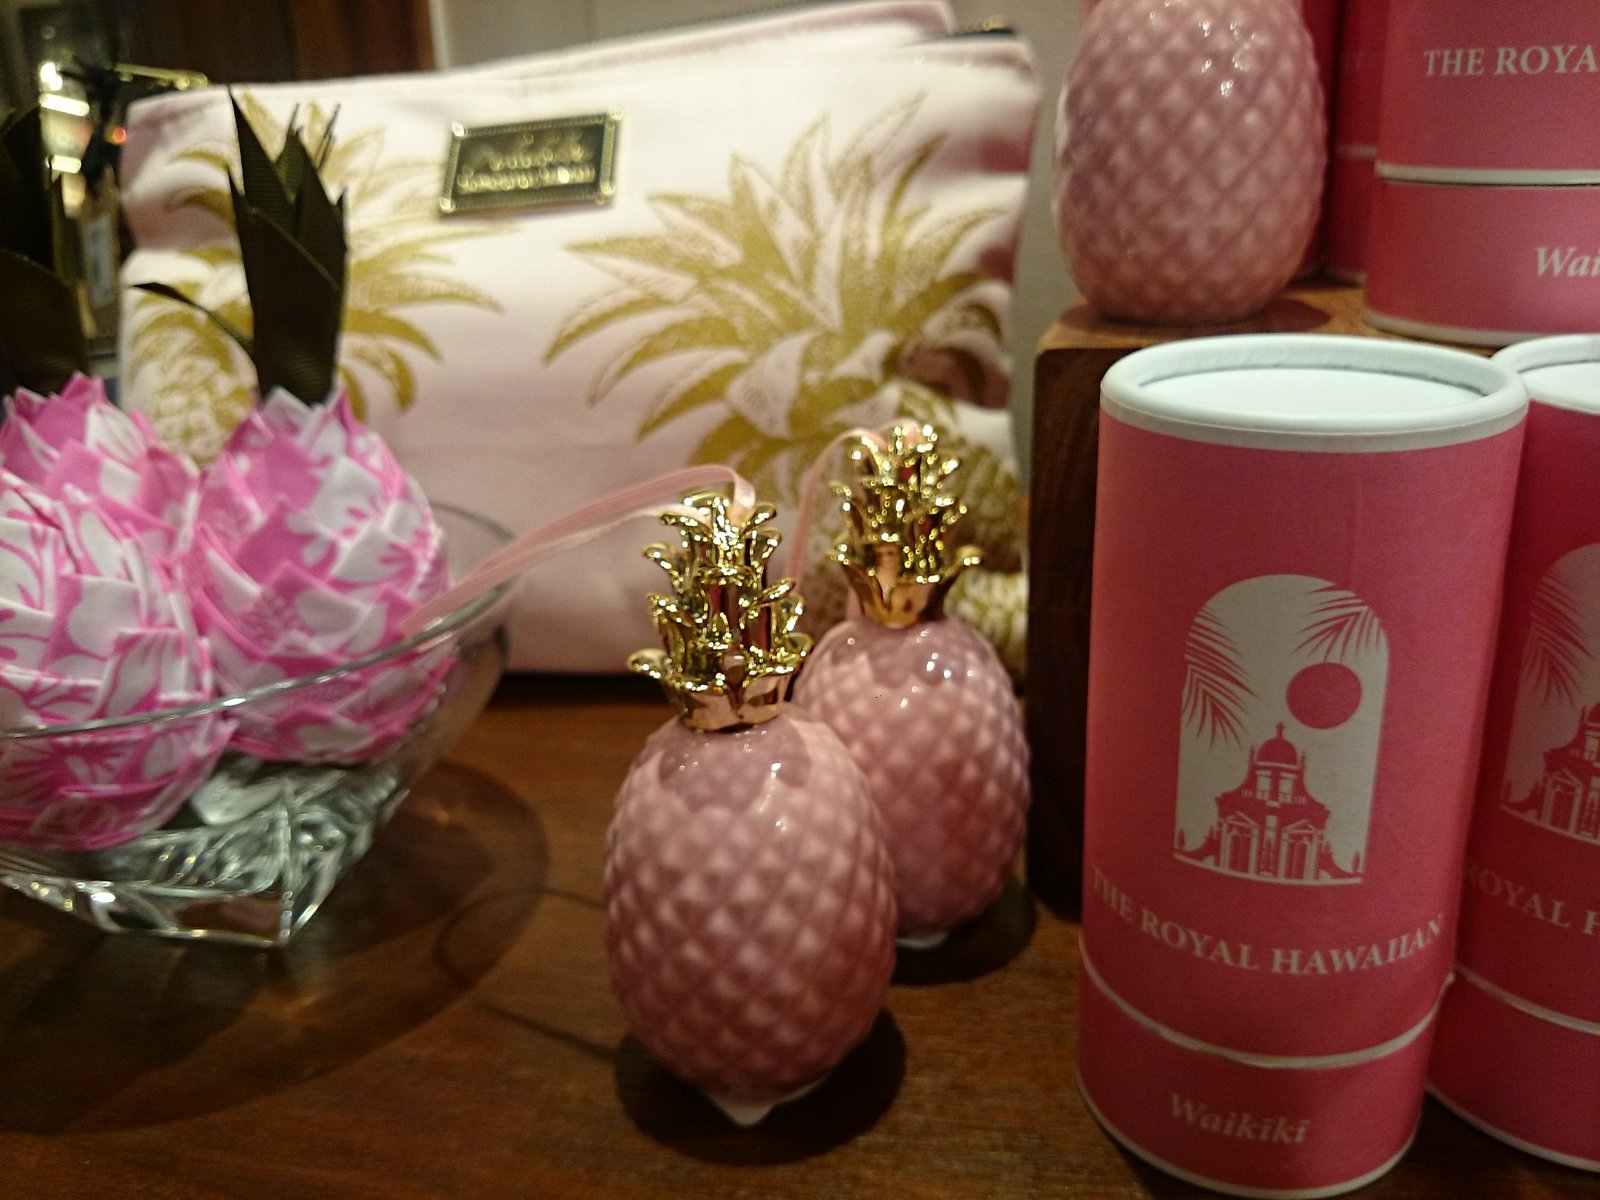 ハワイでピンクの可愛いお土産が買えるお店 ロイヤルハワイアンホテル Trhインスパイアード Playlife プレイライフ